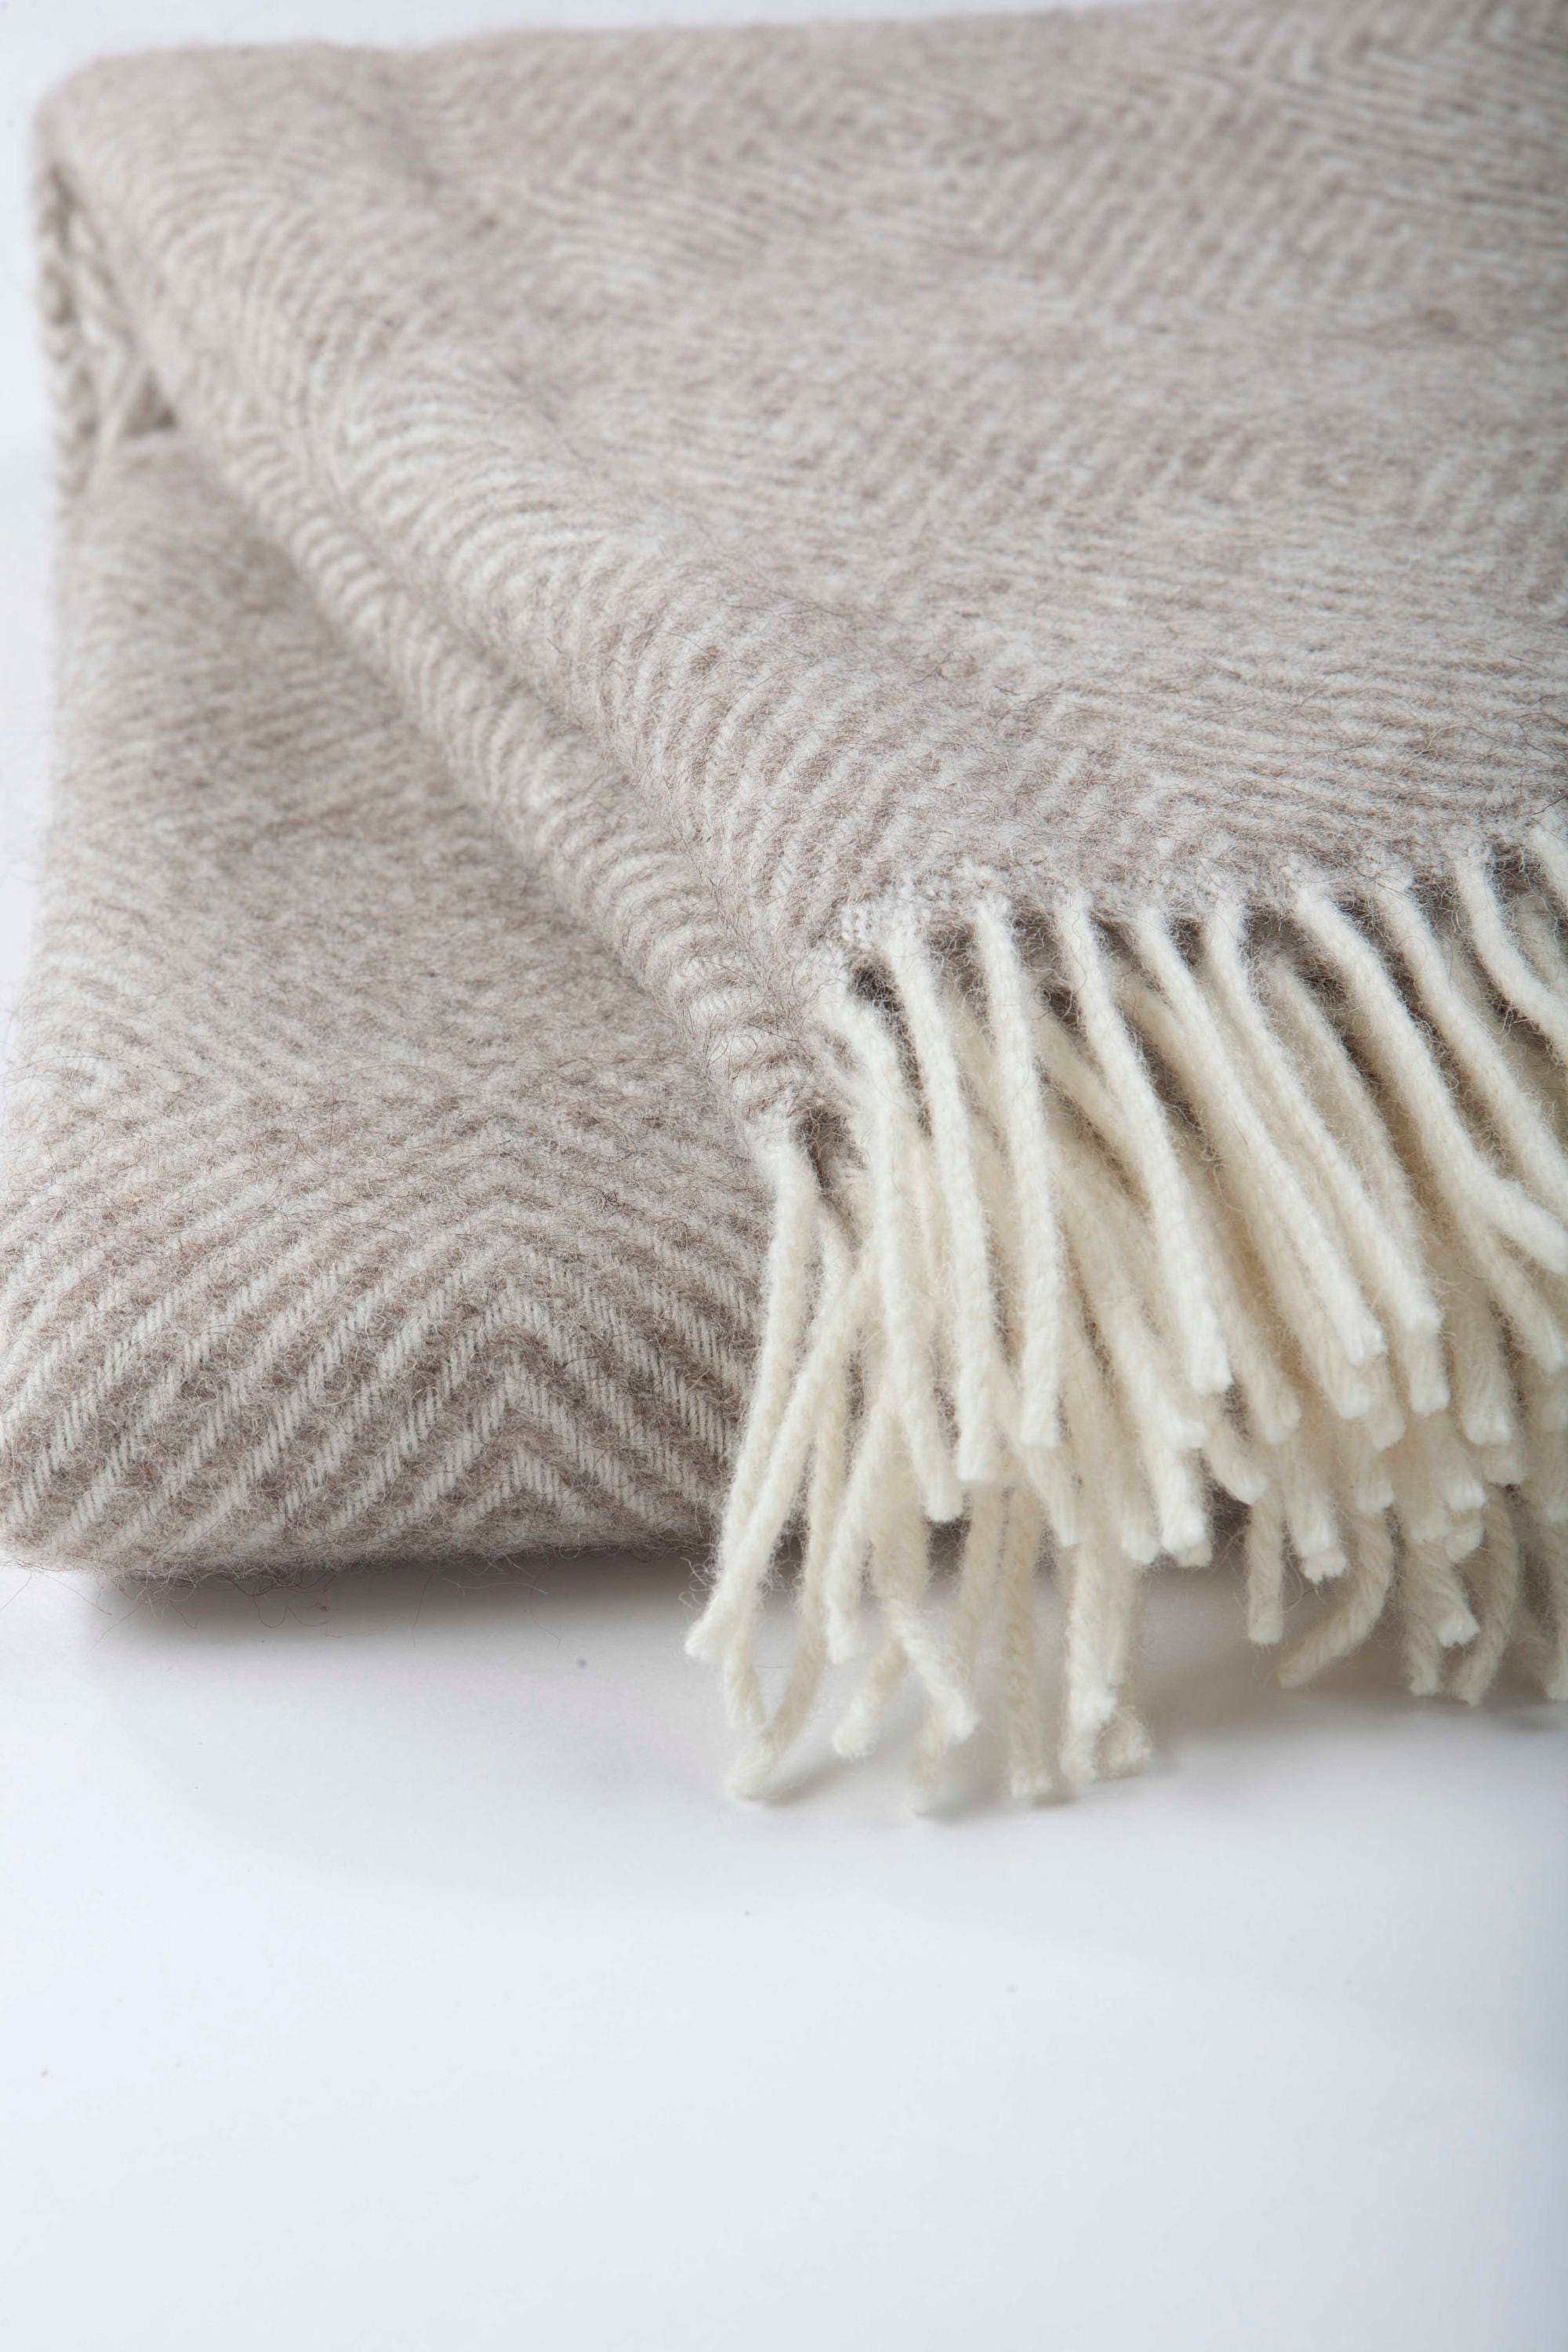 Wool blanket / beige wool blanket / throw blanket / chunky | Etsy